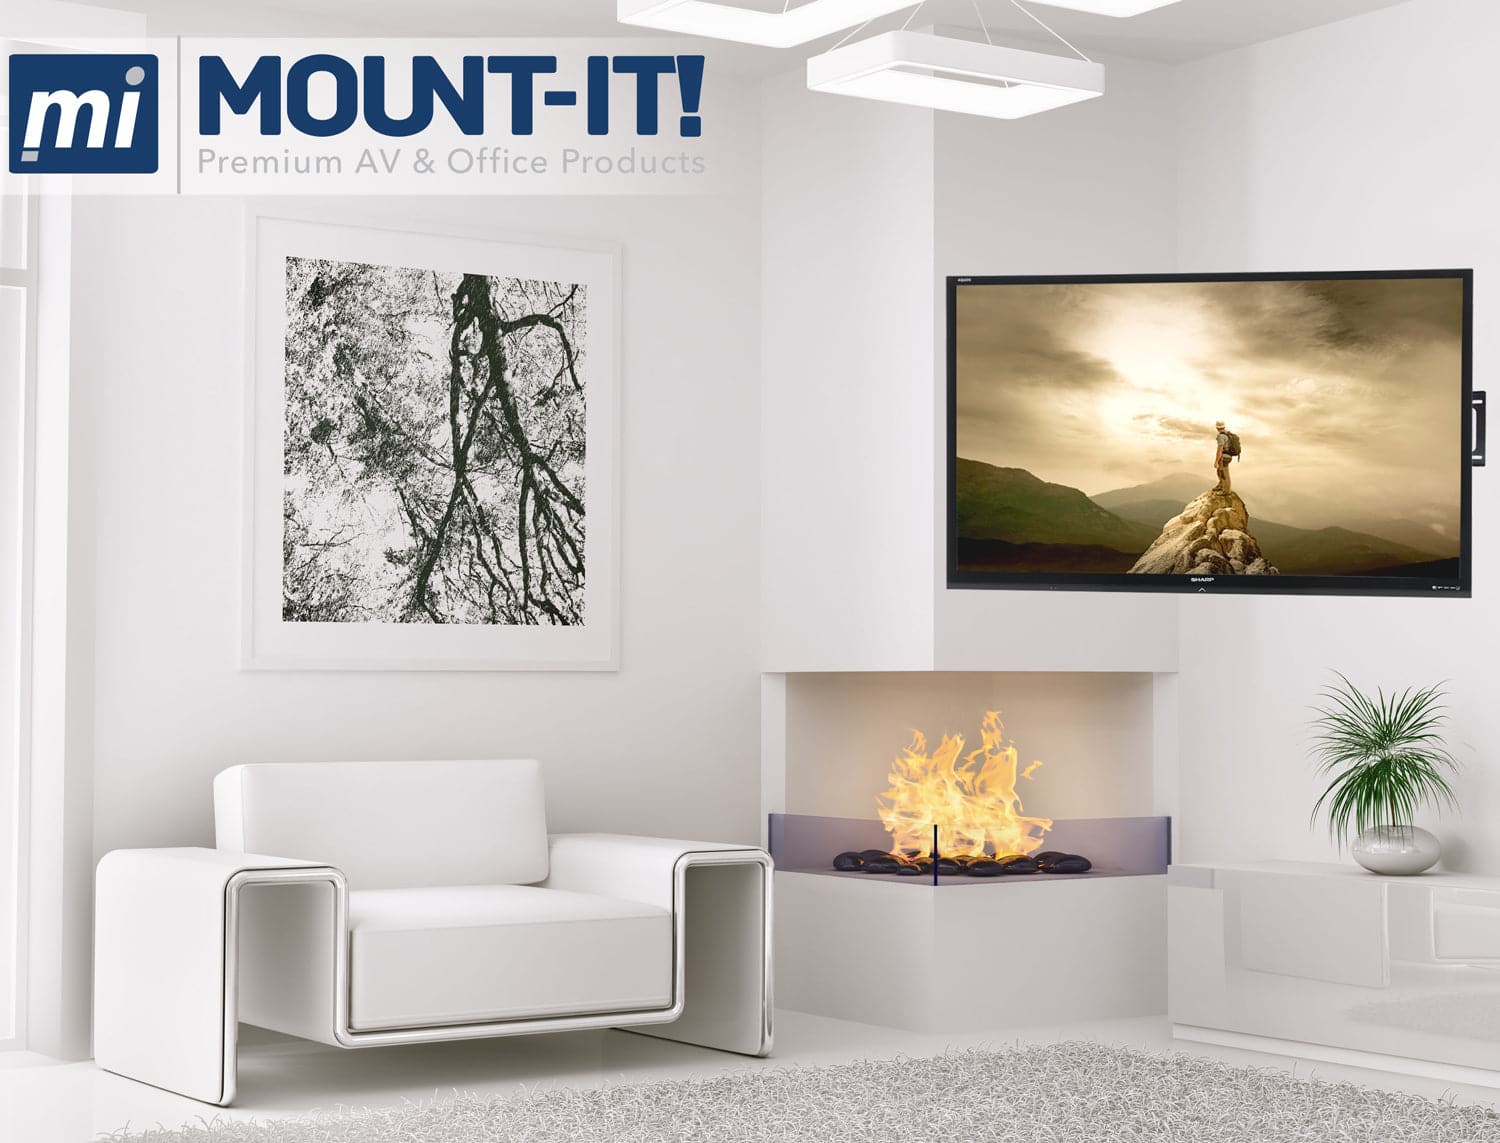 Full Motion Corner TV Mount